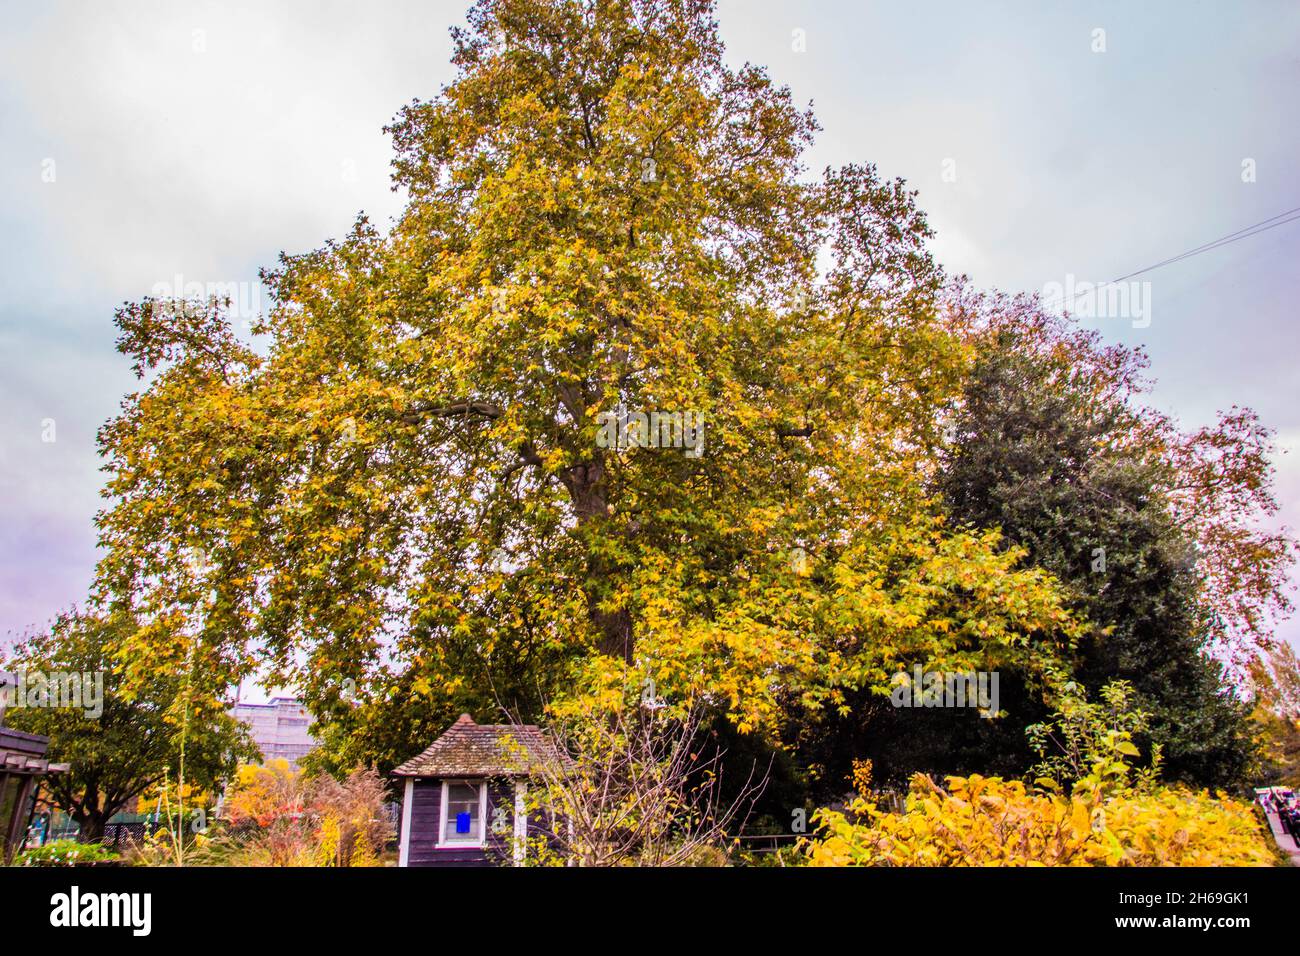 13. November 2021, London, England, Großbritannien: Battersea Park, London, Großbritannien, 13. November 2021. Battersea Park ist ein bekanntes Herbstziel in London. Abgesehen von der üblichen Auswahl an britischen Bäumen, hat es eine Vielzahl von subtropischen und Wintergärten, die es besonders faszinierend machen. Die hybriden Erdbeerbäume stechen hervor und färben in dieser Saison alles rot. (Bild: © Sabrina Merolla/ZUMA Press Wire) Stockfoto